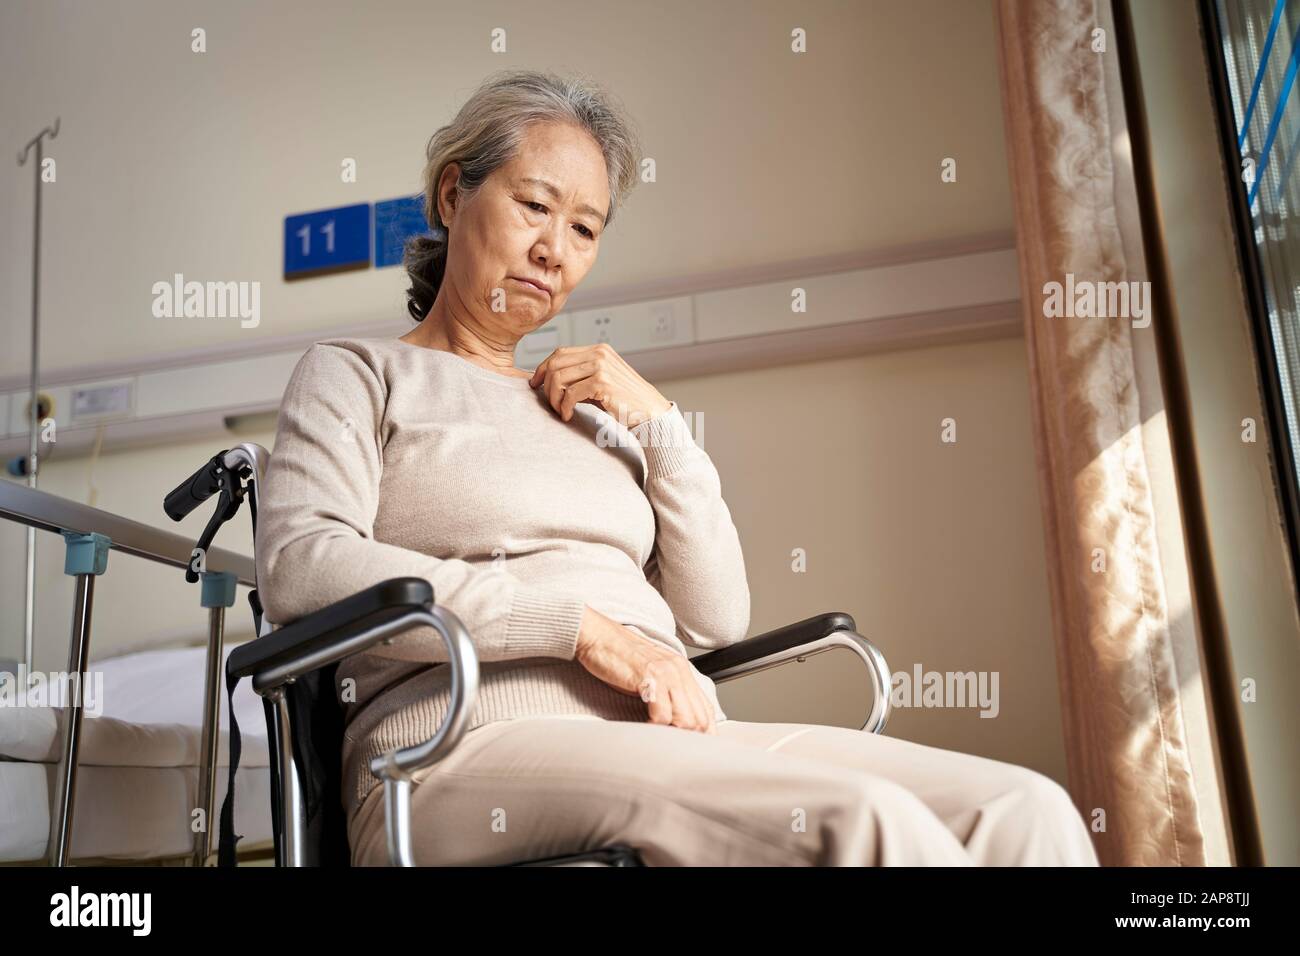 Traurige und depressive asiatische ältere Frau, die allein im Rollstuhl sitzt und im Pflegeheim mit dem Kopf nach unten steht Stockfoto